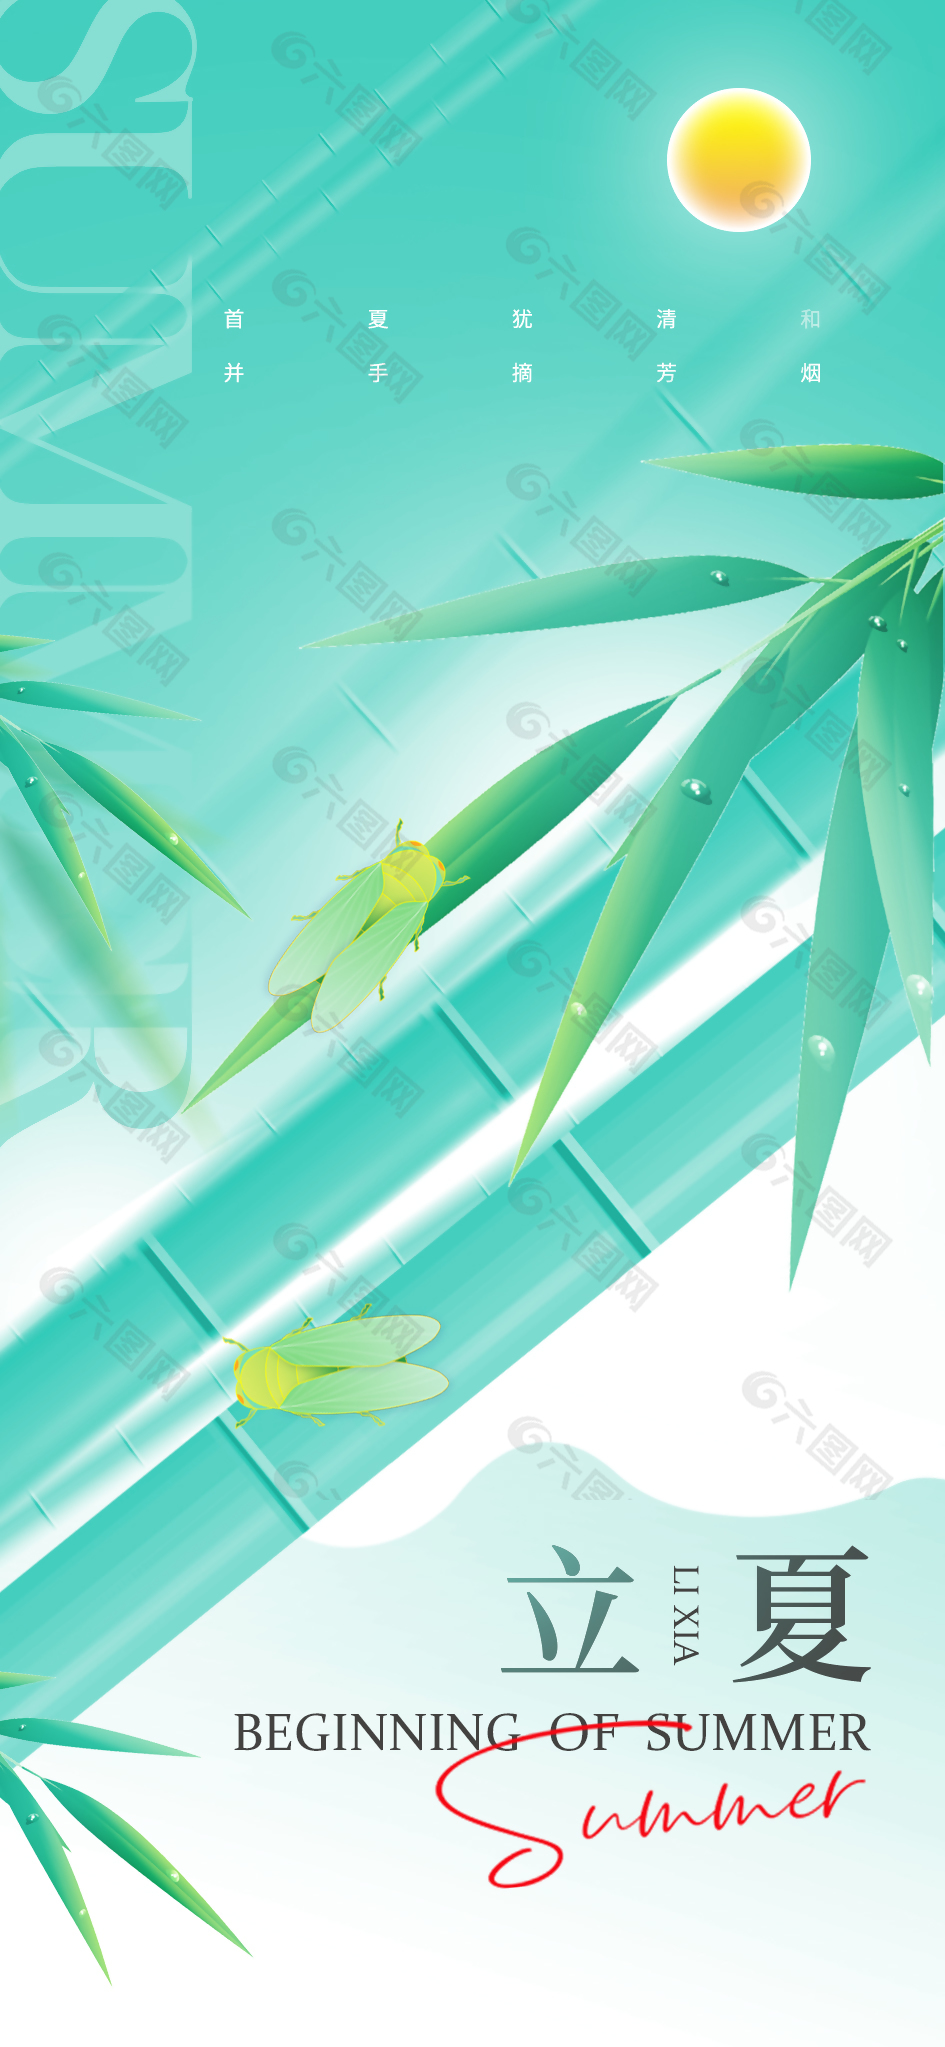 立夏时节简约手绘竹子元素海报下载